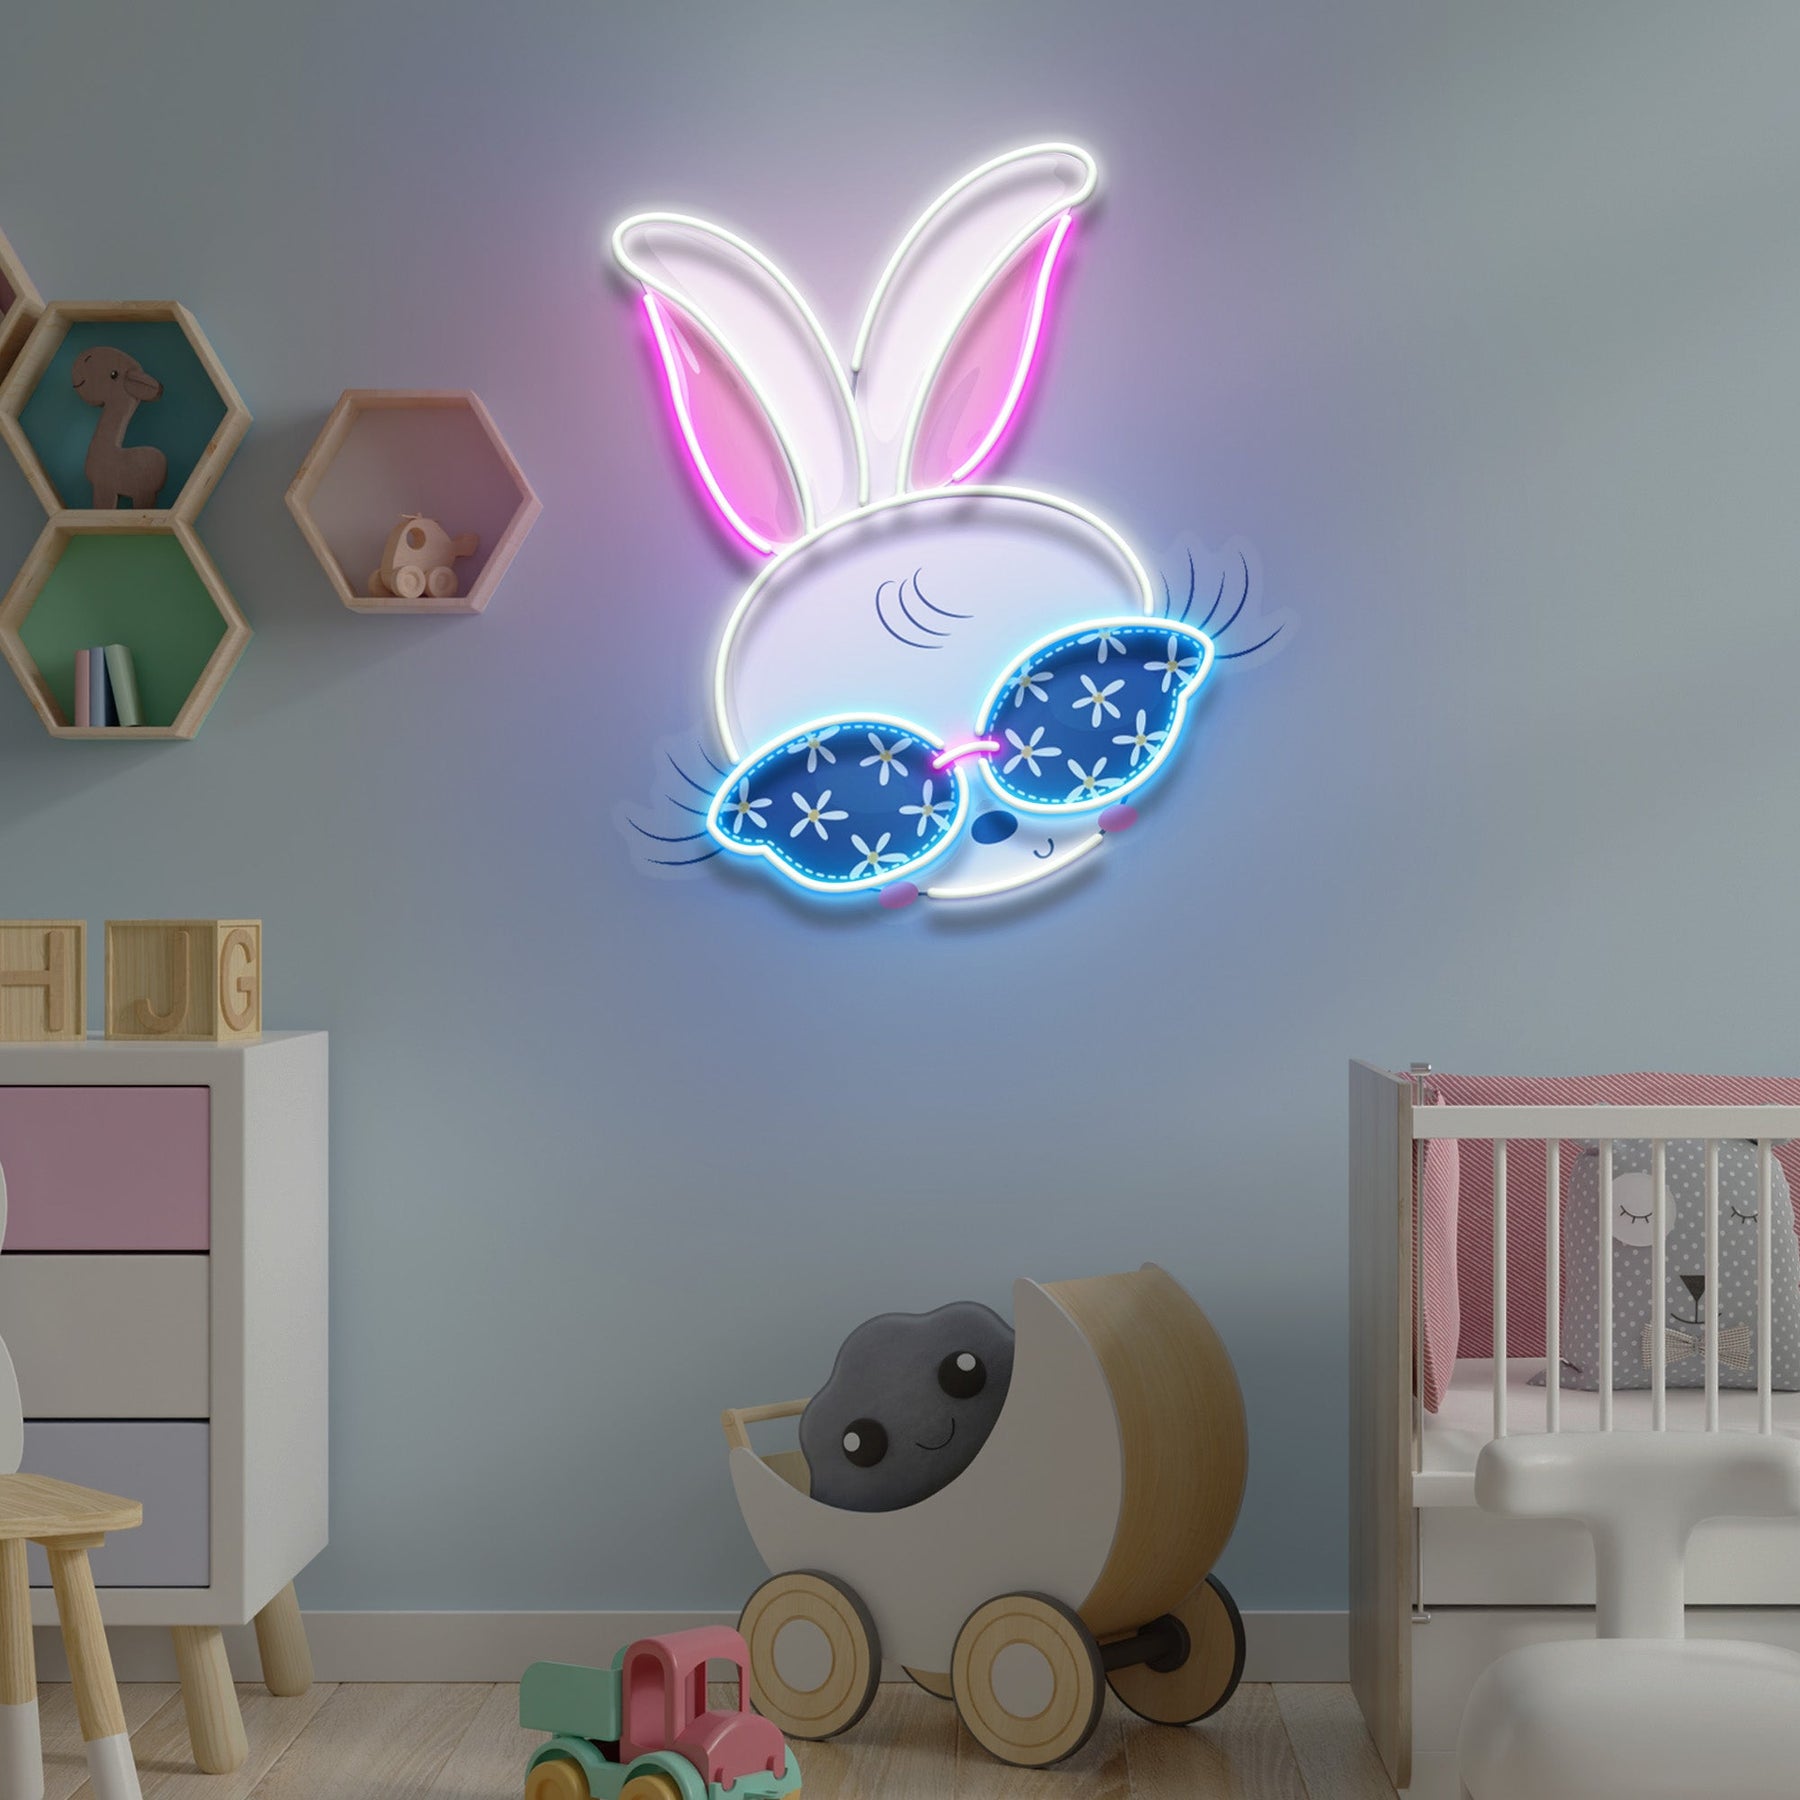 Custom Name Beautiful Rabbit Girl Gift For Kids Led Neon Sign Light